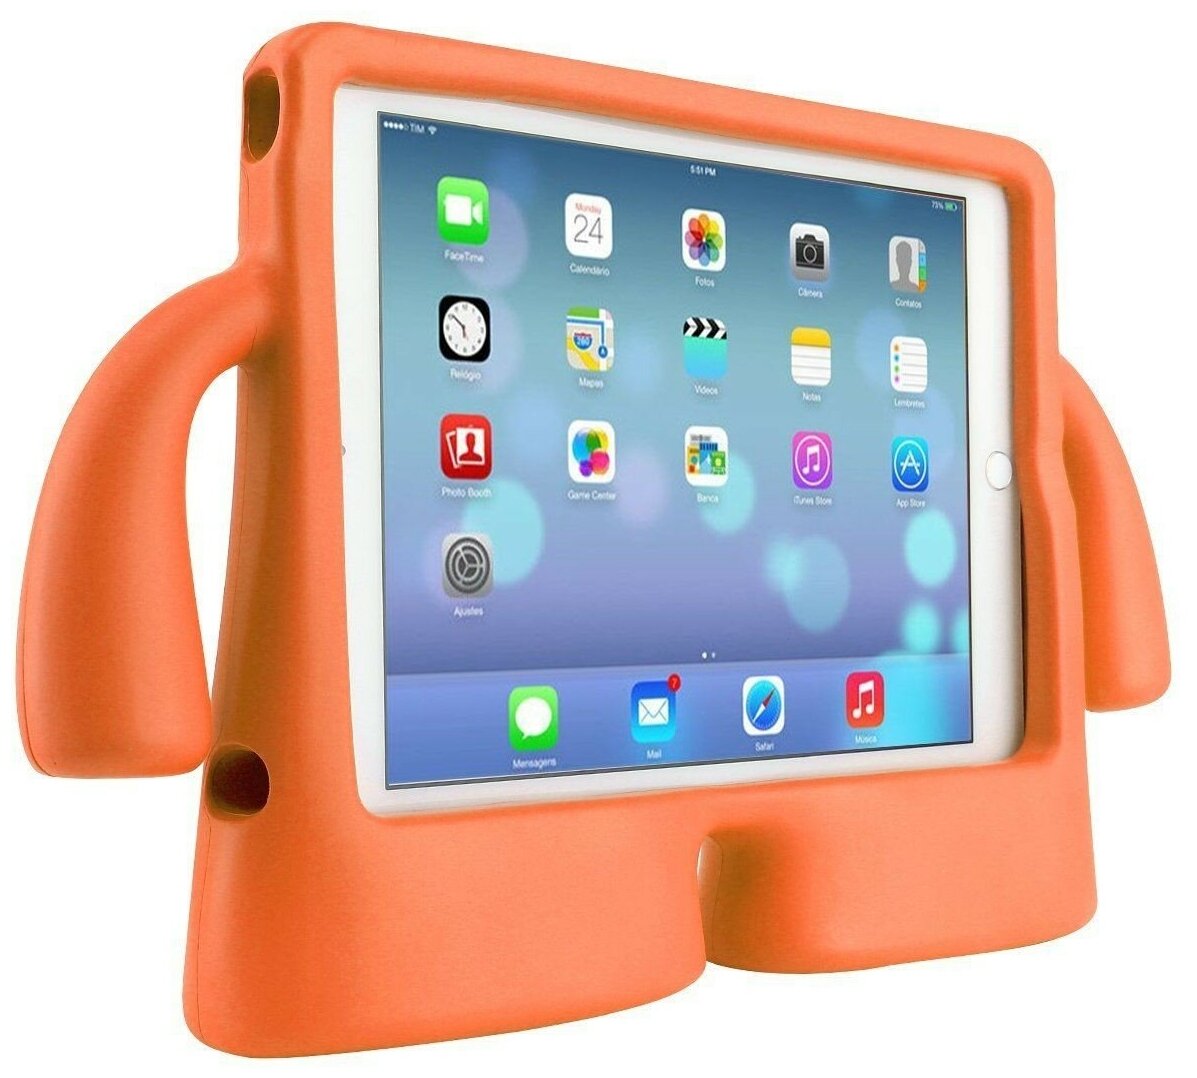 Детский чехол "Happy Hands", для iPad Air/Air2/Pro 9.7 (подходит для всех iPad с диагональю 9,7), апельсиновый